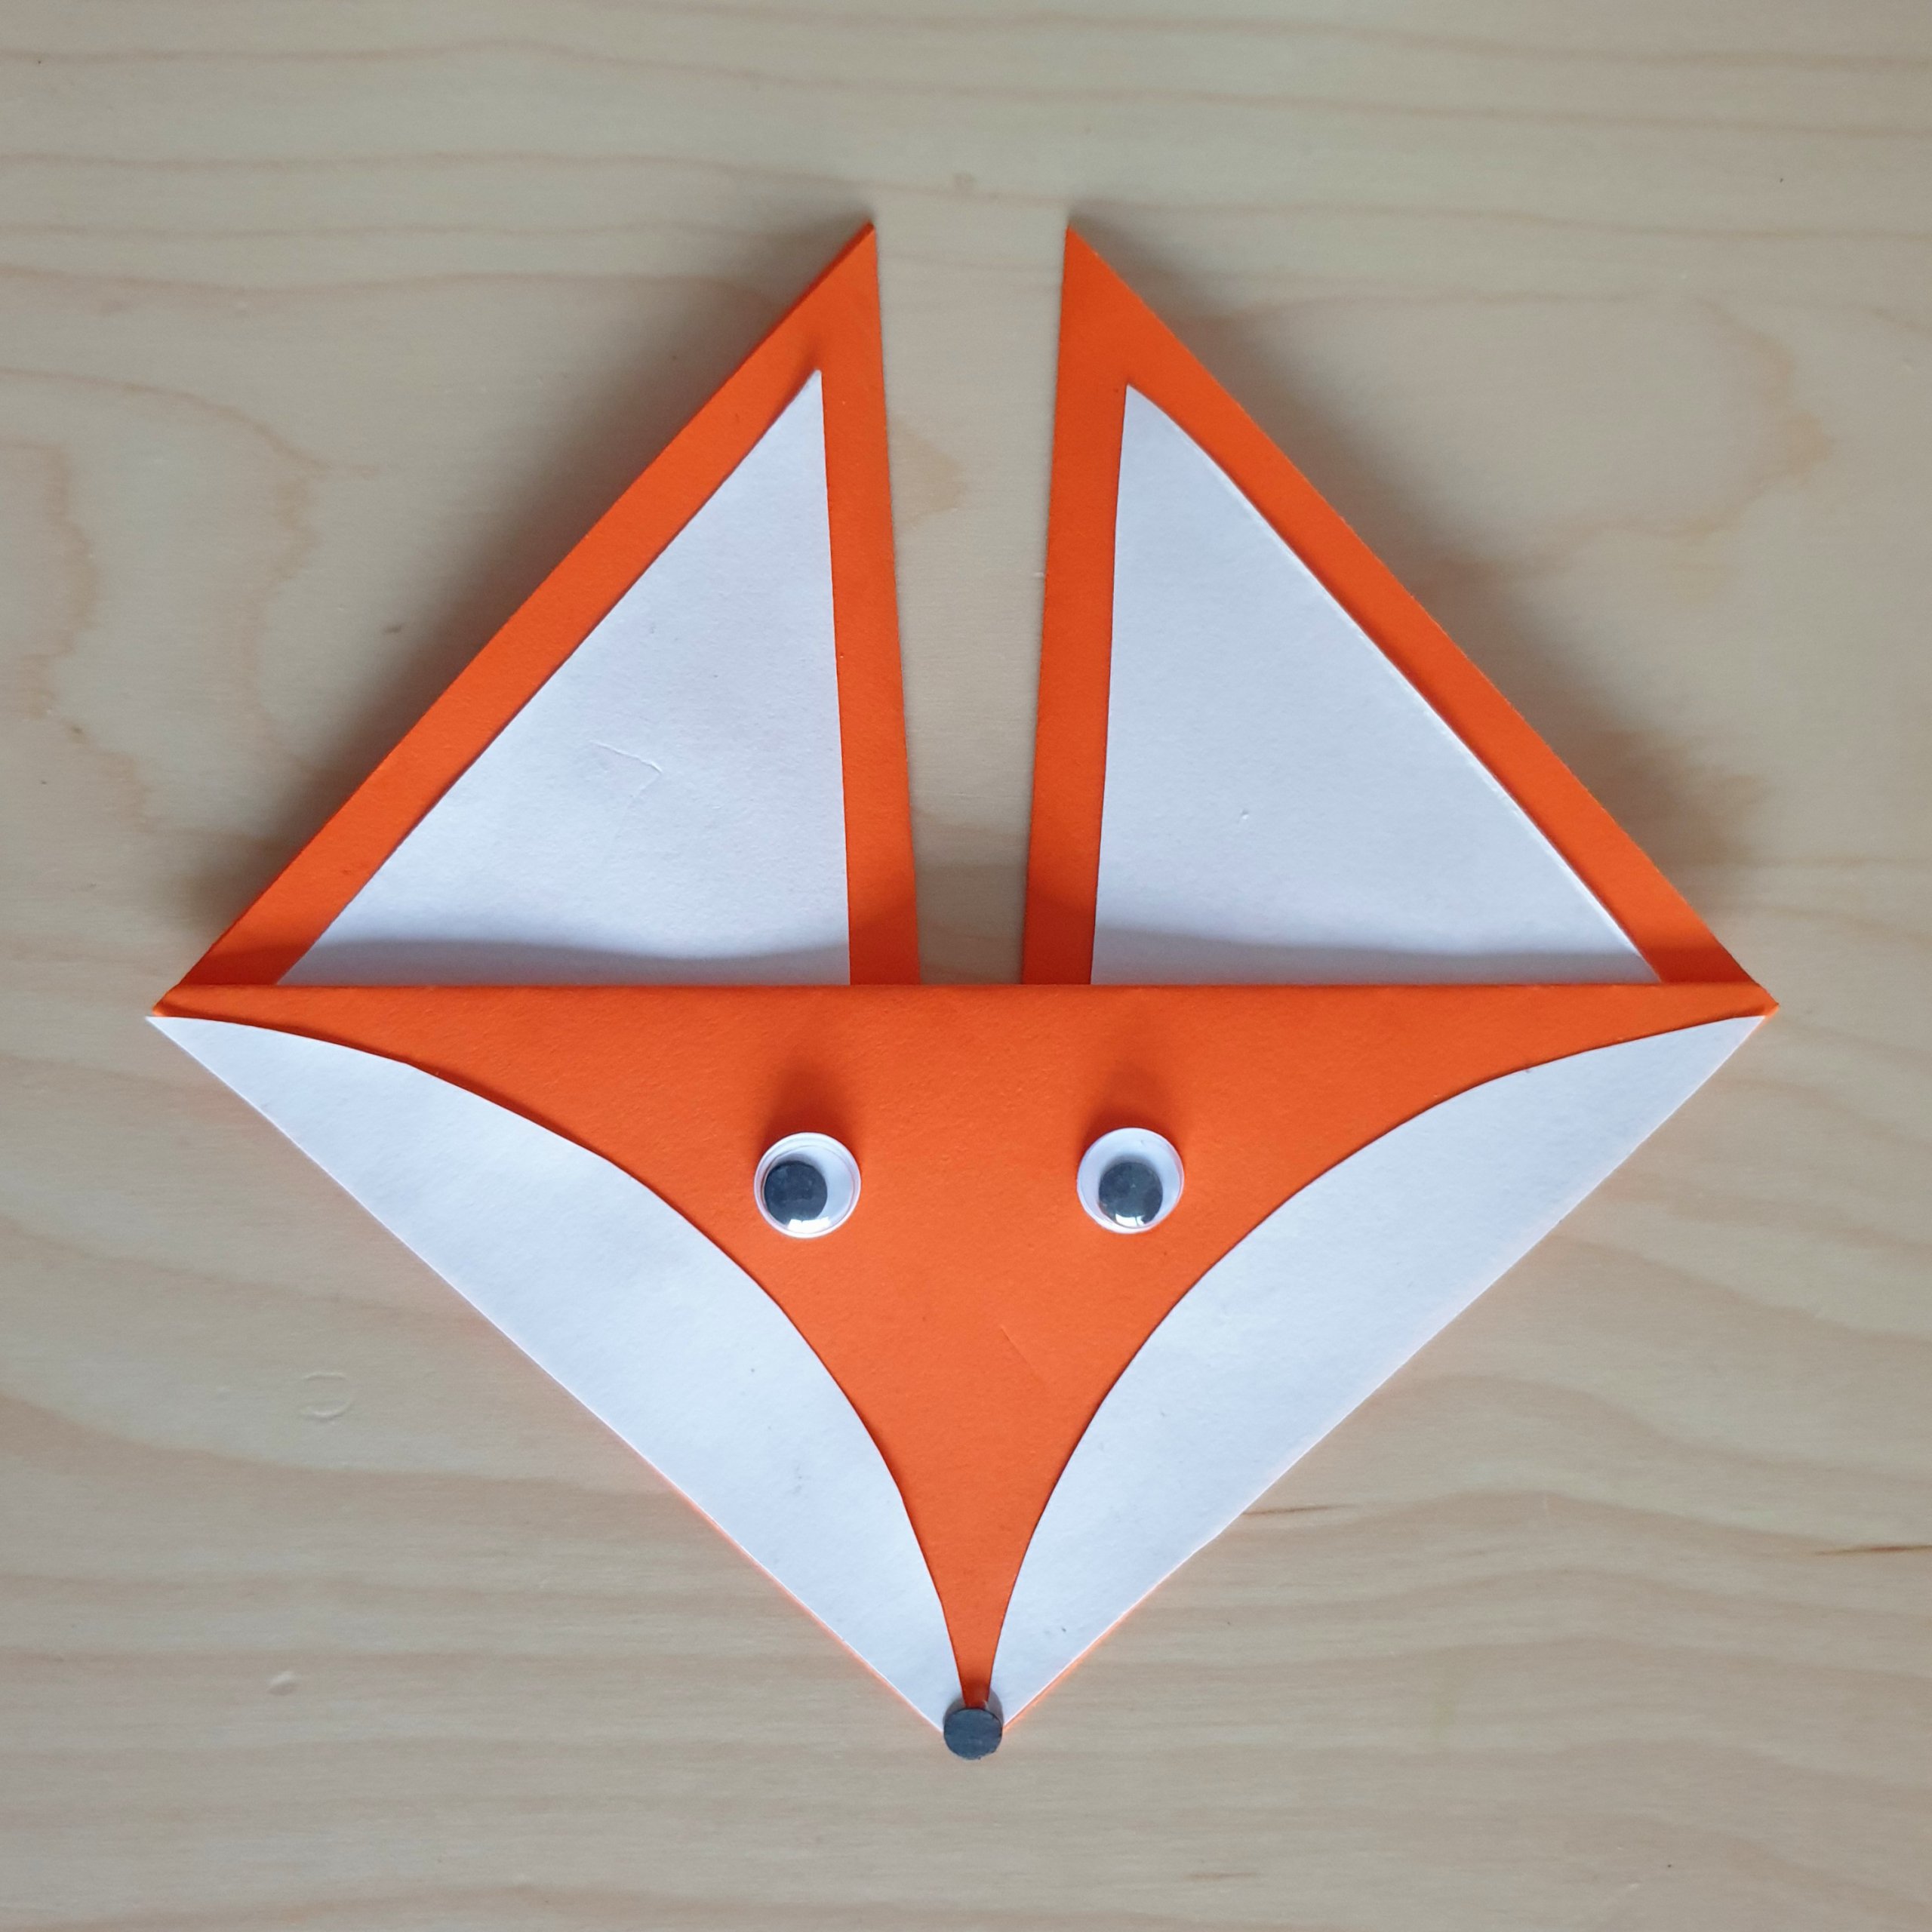 Origami vouwen: makkelijke ideeën en voorbeelden. Deze origami vossen kun je heel makkelijk vouwen van een vierkant gekleurd papier of vouwblaadje. 